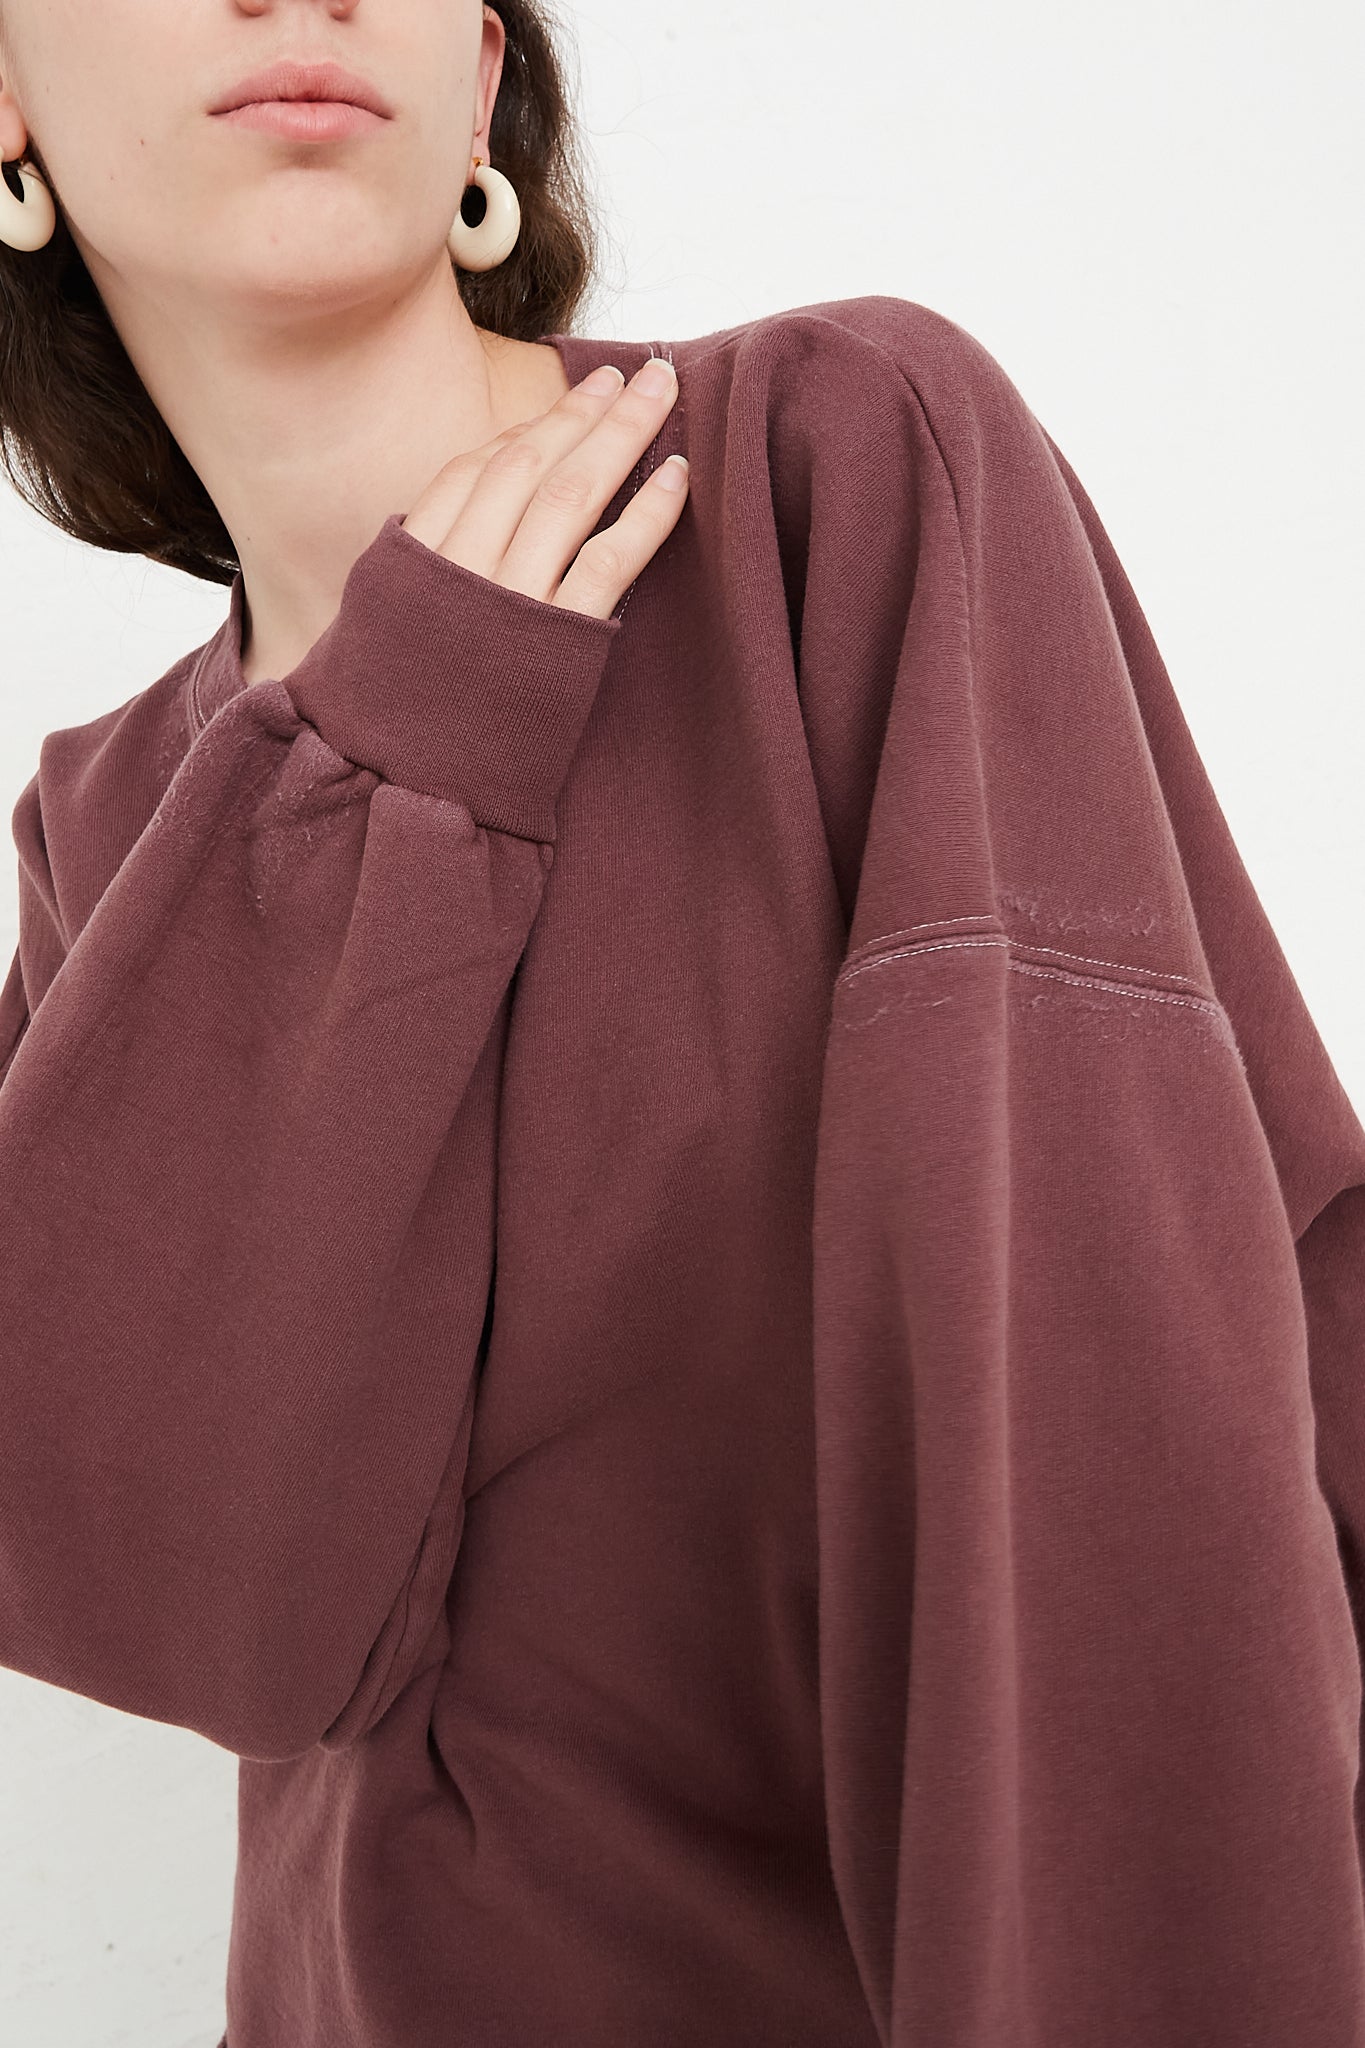 Rachel Comey Fonder Sweatshirt in Clay sleeve detail